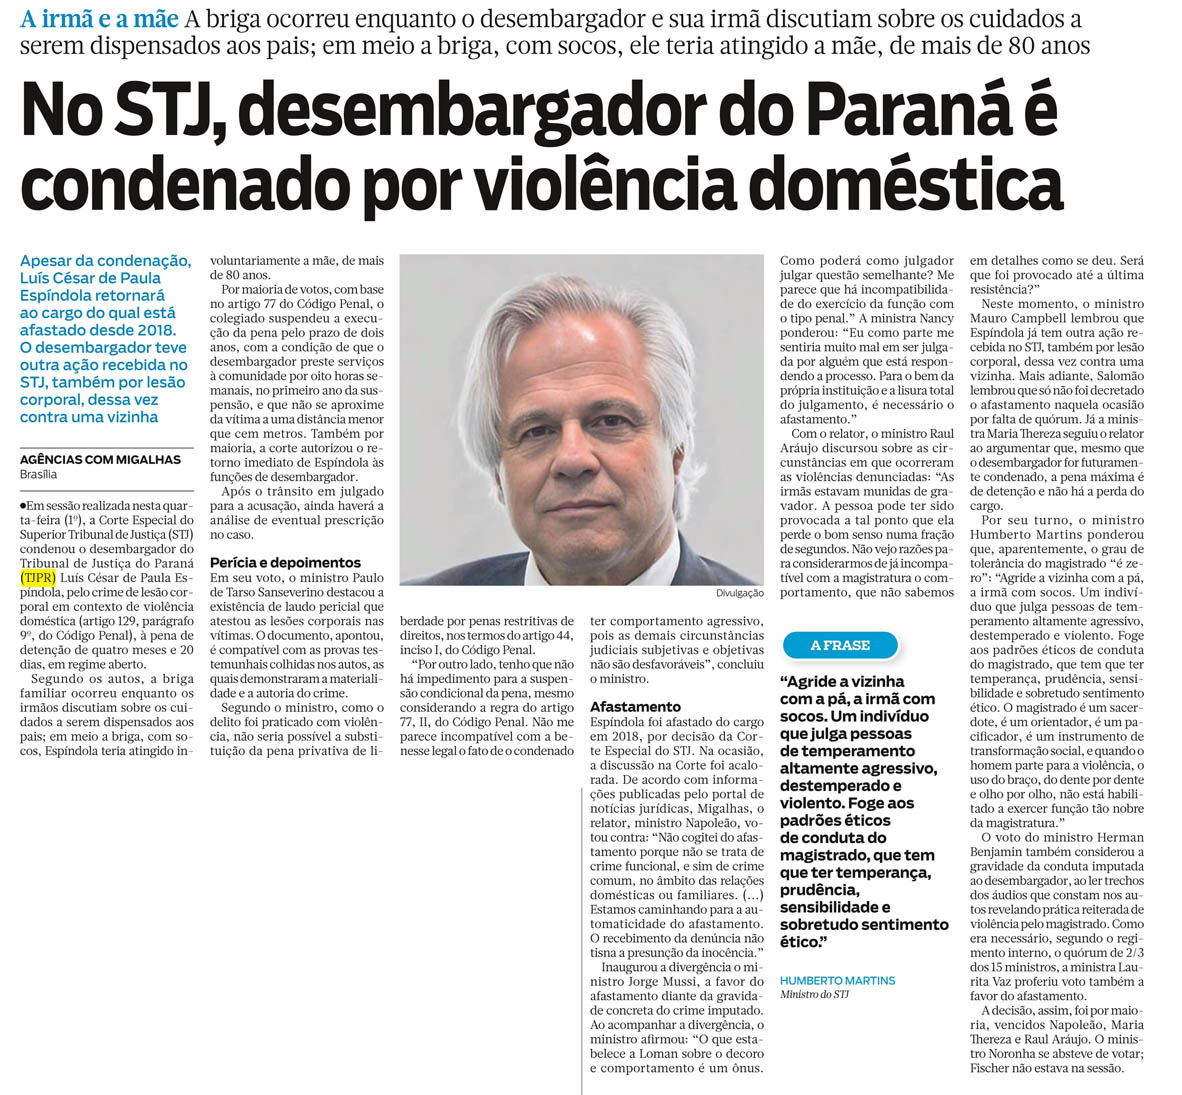 No STJ, desembargador do Paraná é condenado por violência doméstica - image 1